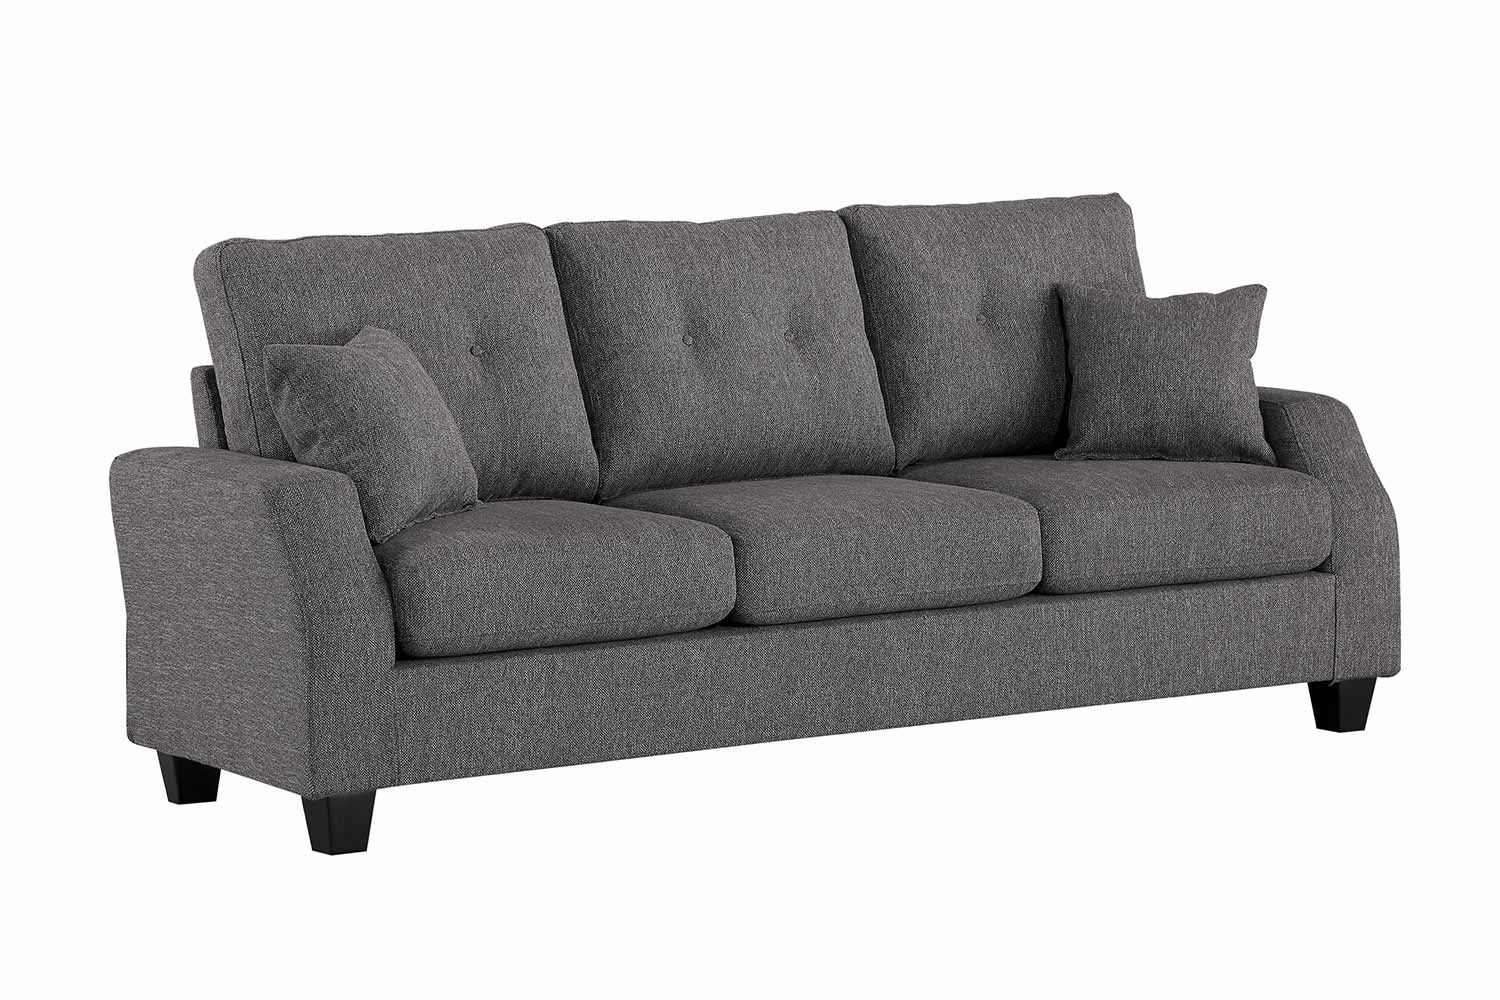 Homelegance Vossel Sofa - Gray